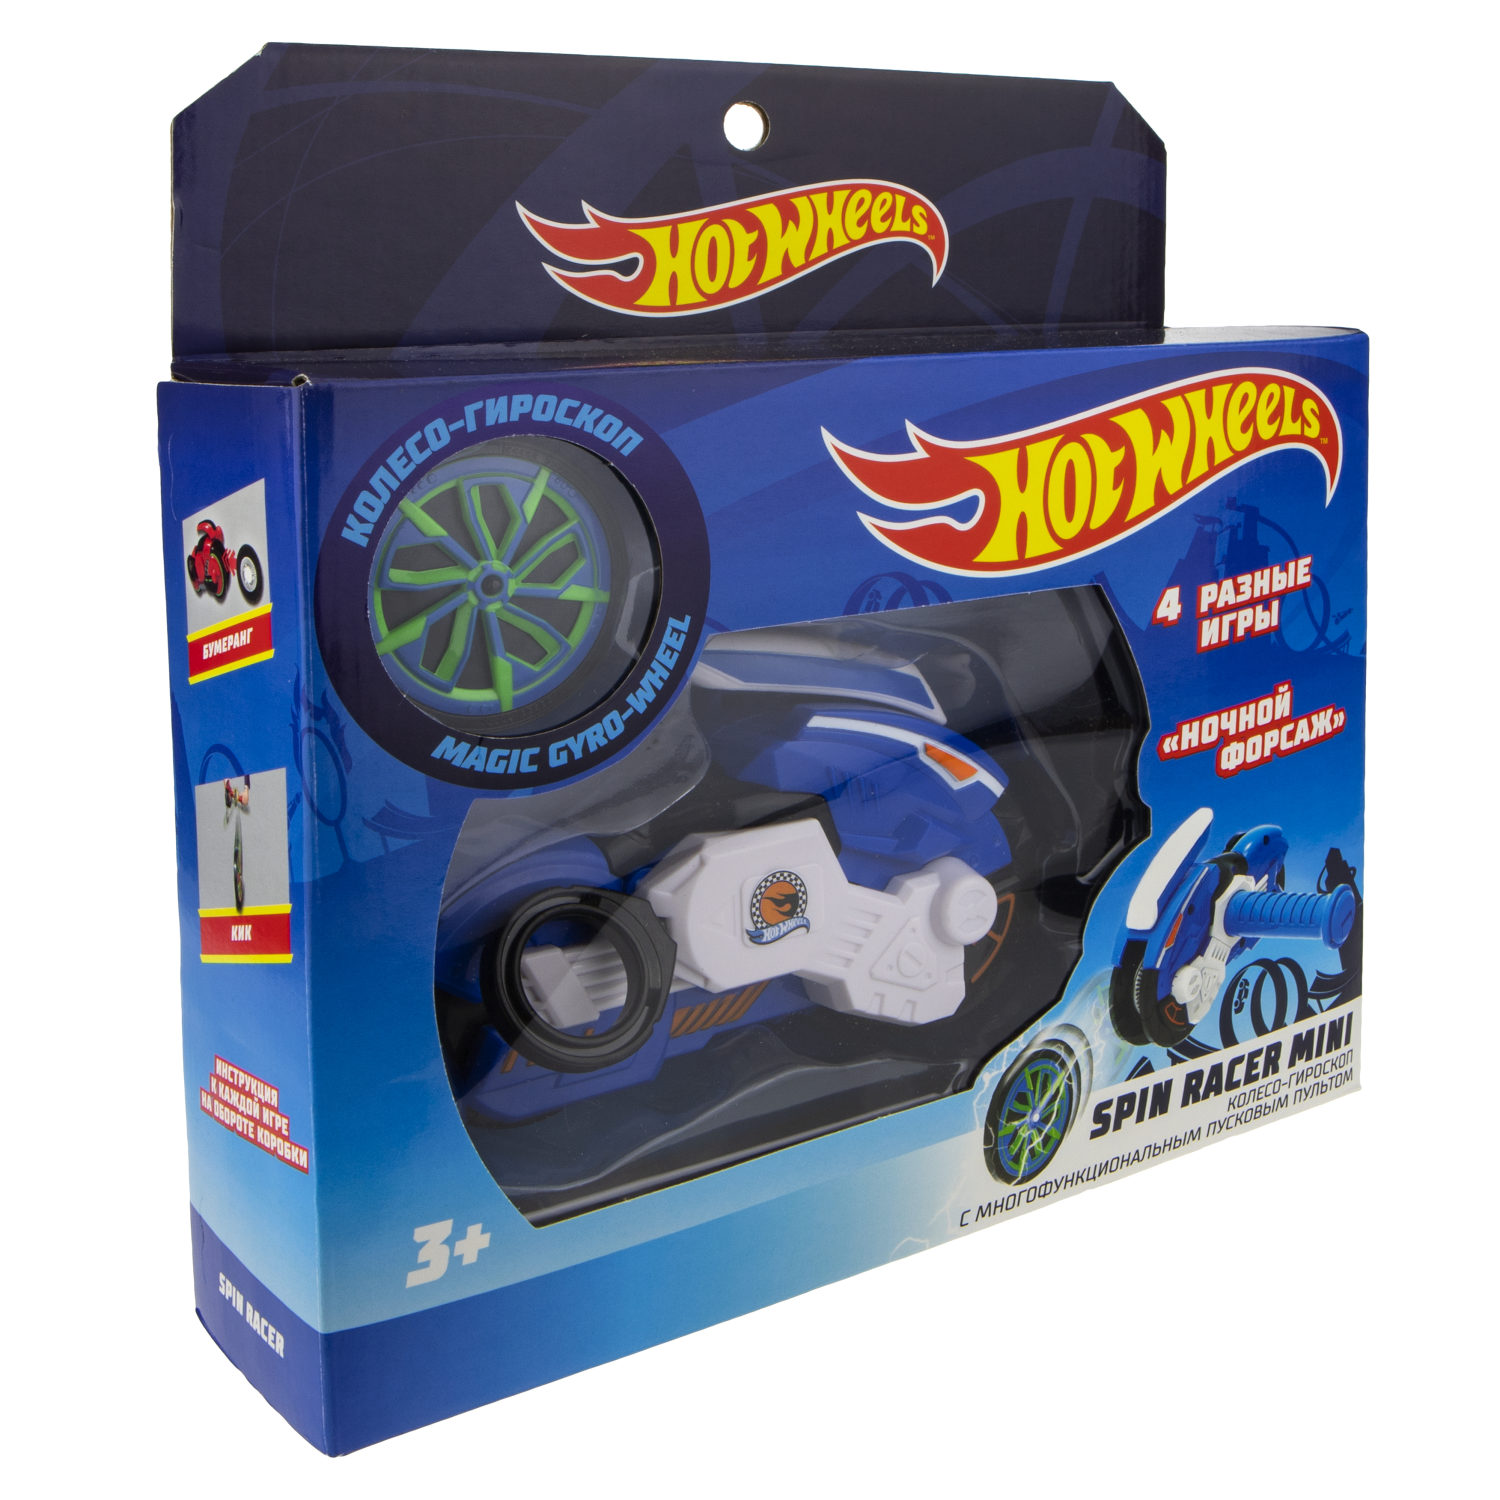 Игровой набор Hot Wheels Spin Racer - Ночной Форсаж  